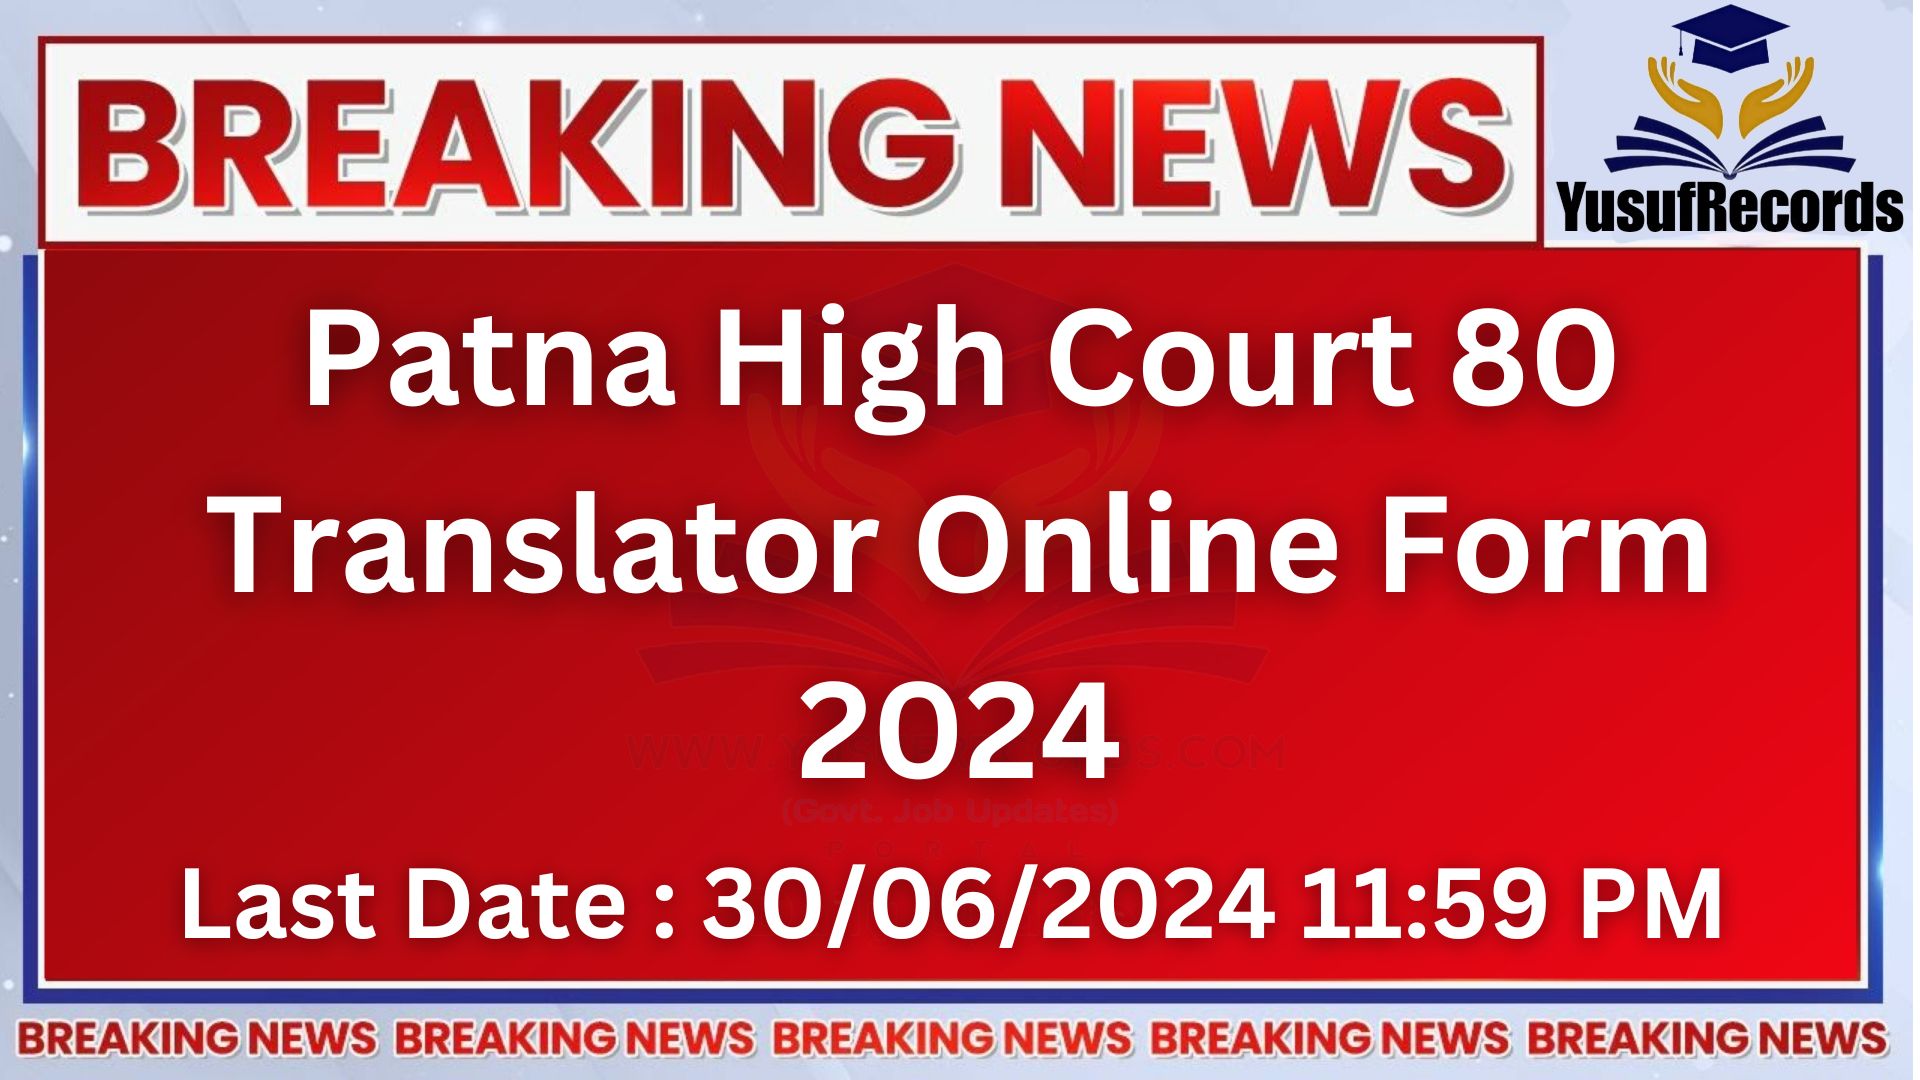 Patna High Court 80 Translator Online FormPatna High Court 80 Translator Online Form